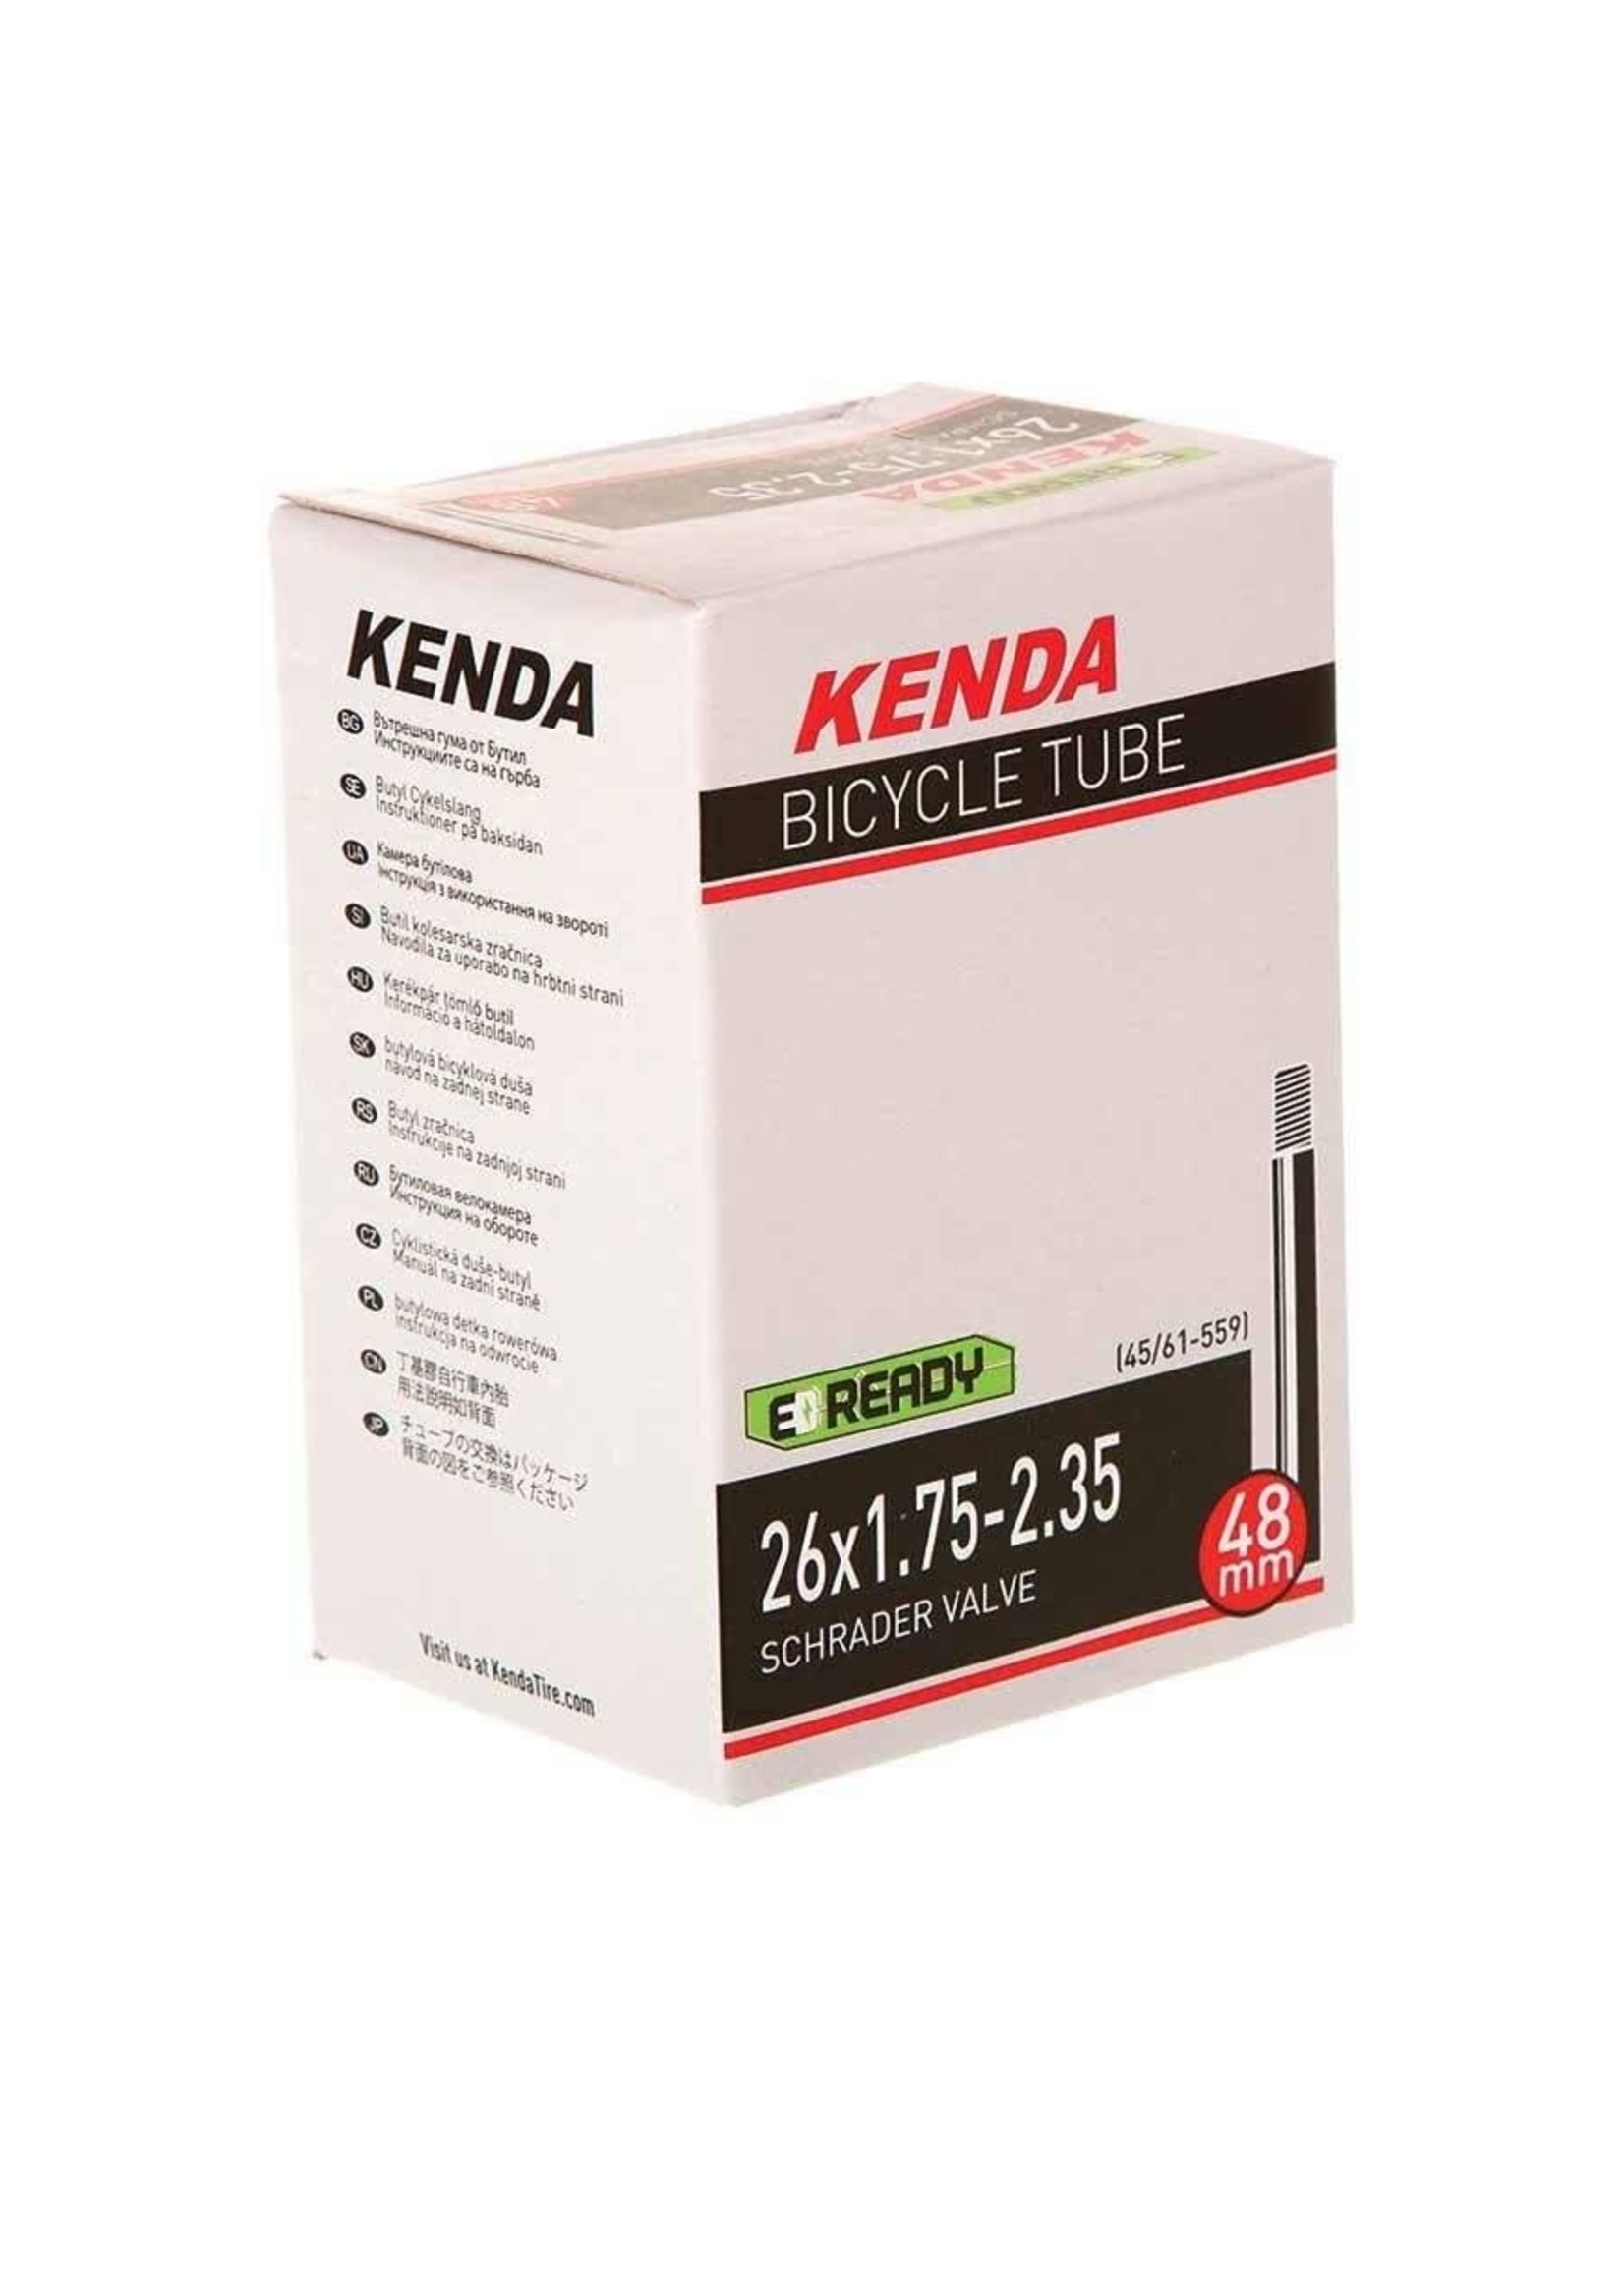 Kenda KENDA - Chambre à air - 26x1.75-2.35 - Schrader 48mm